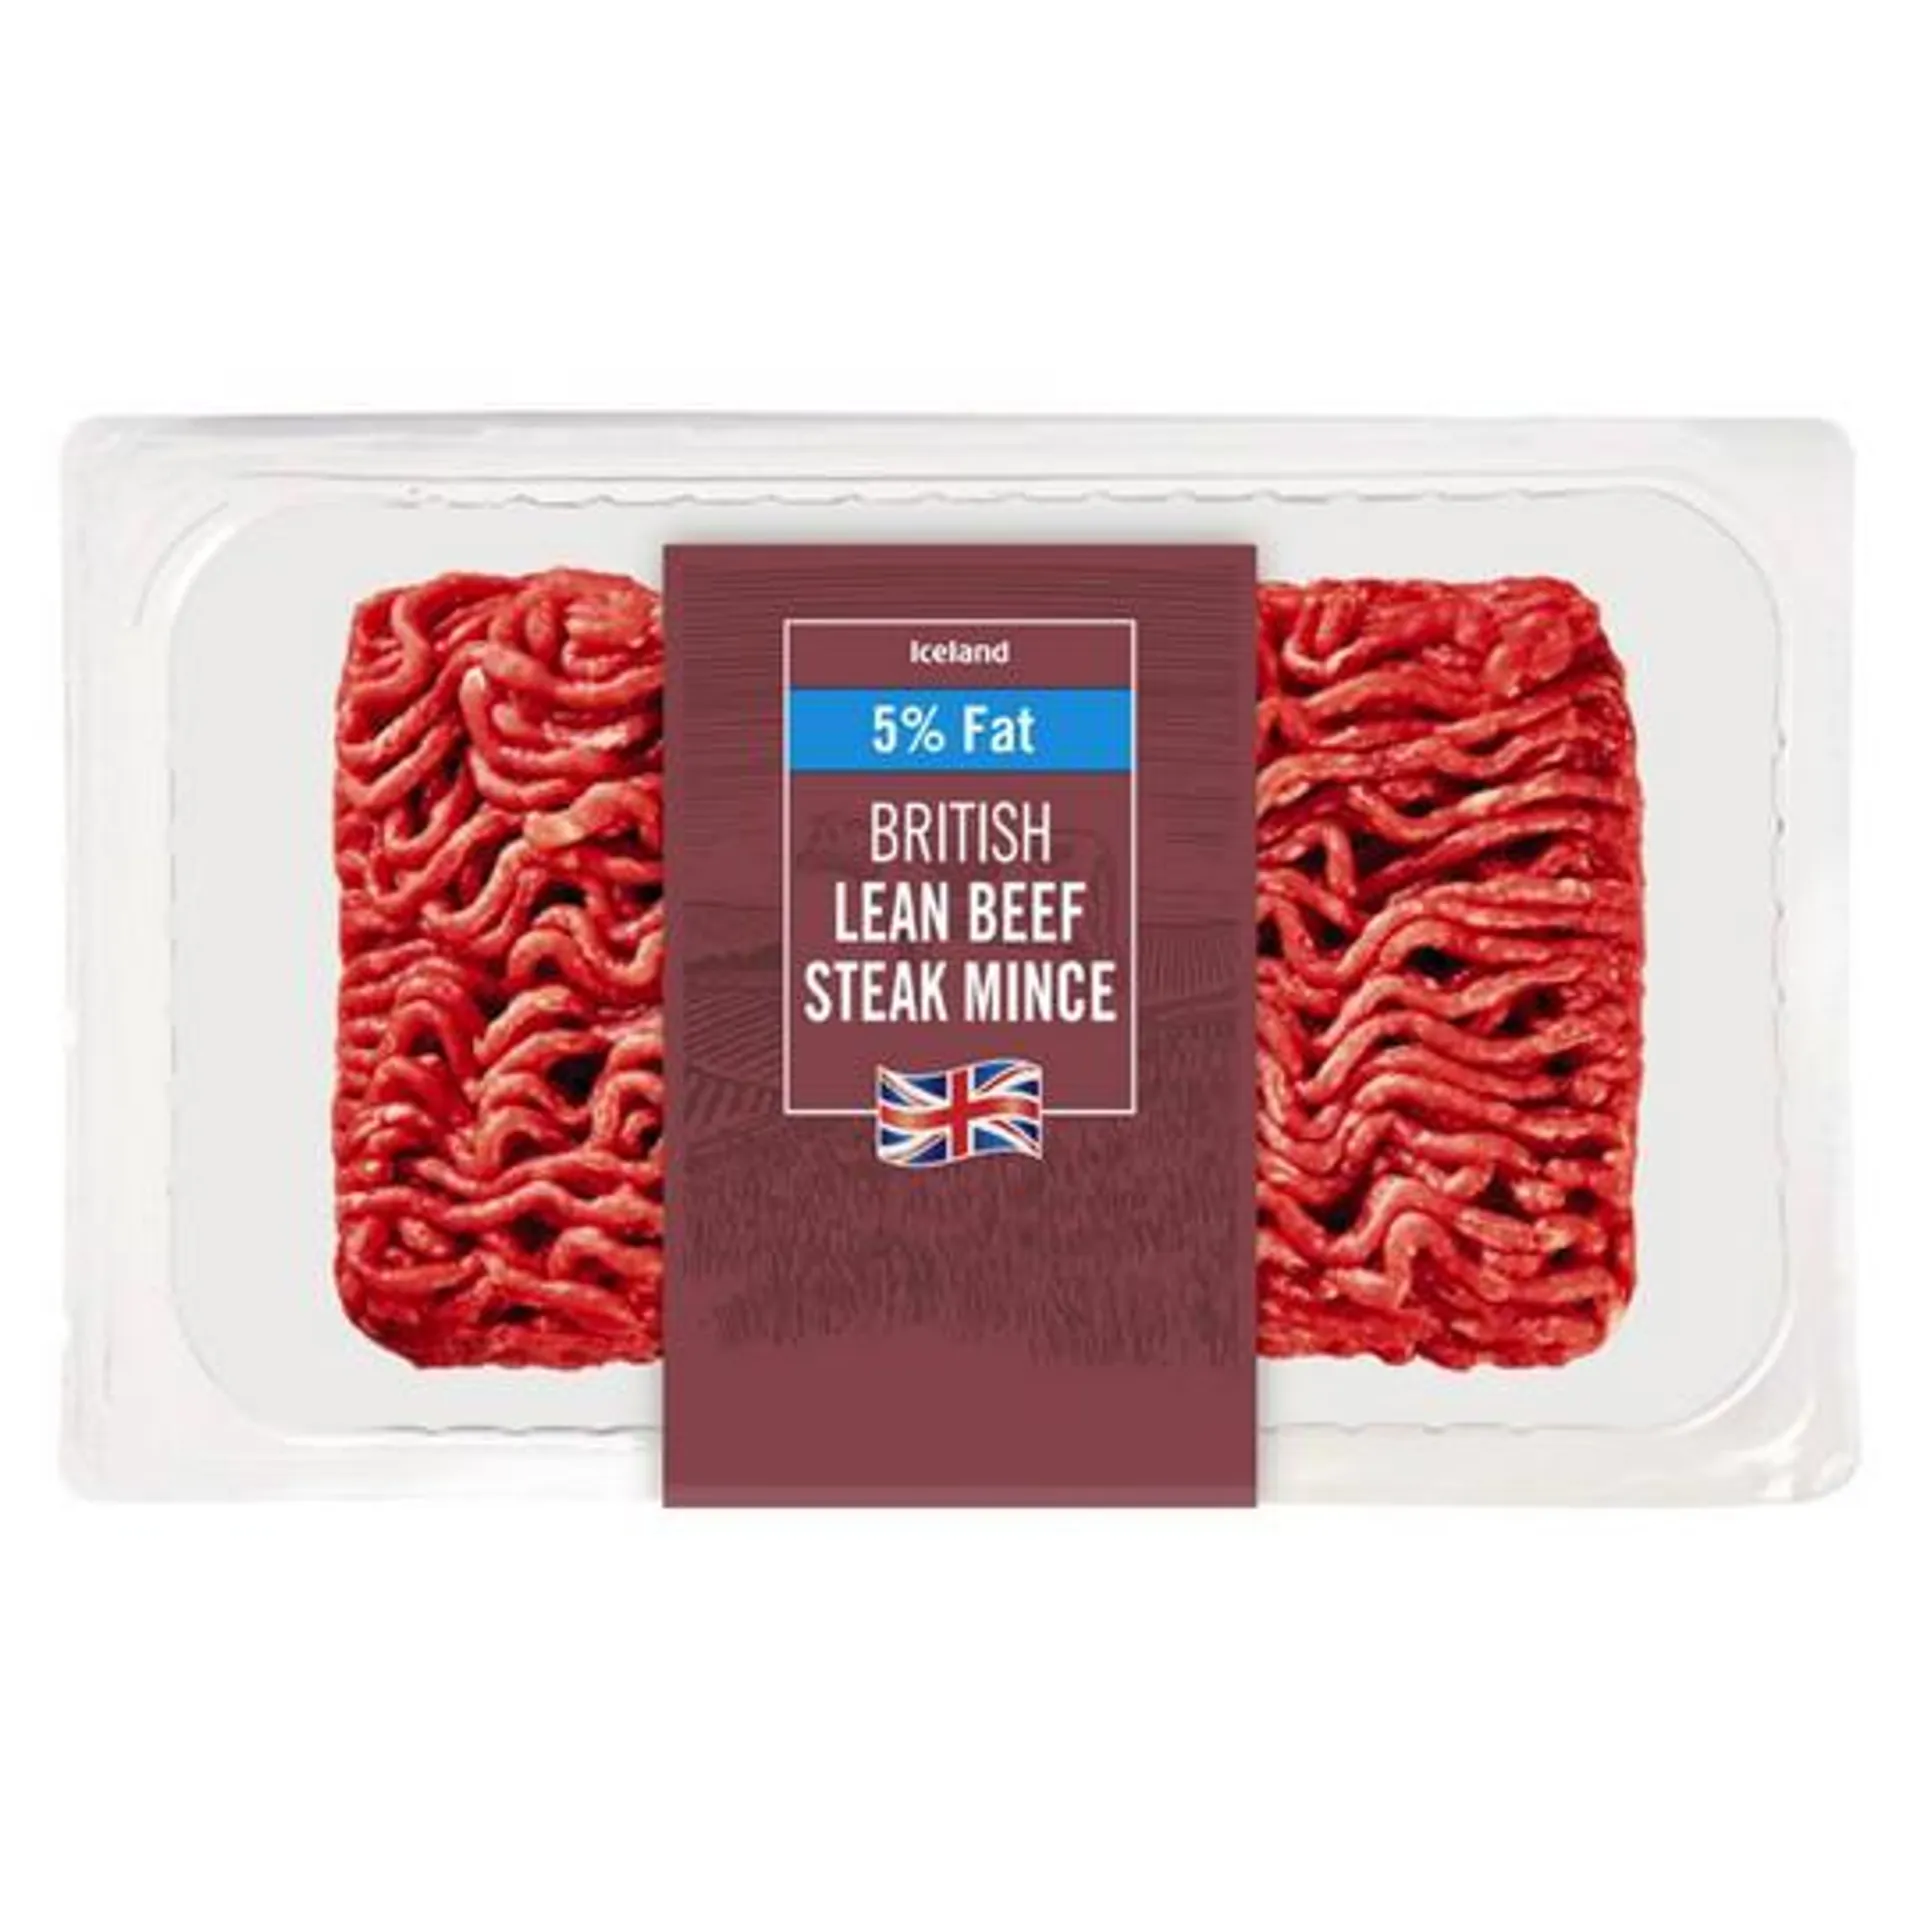 Iceland British Lean Beef Steak Mince 5% Fat 360g